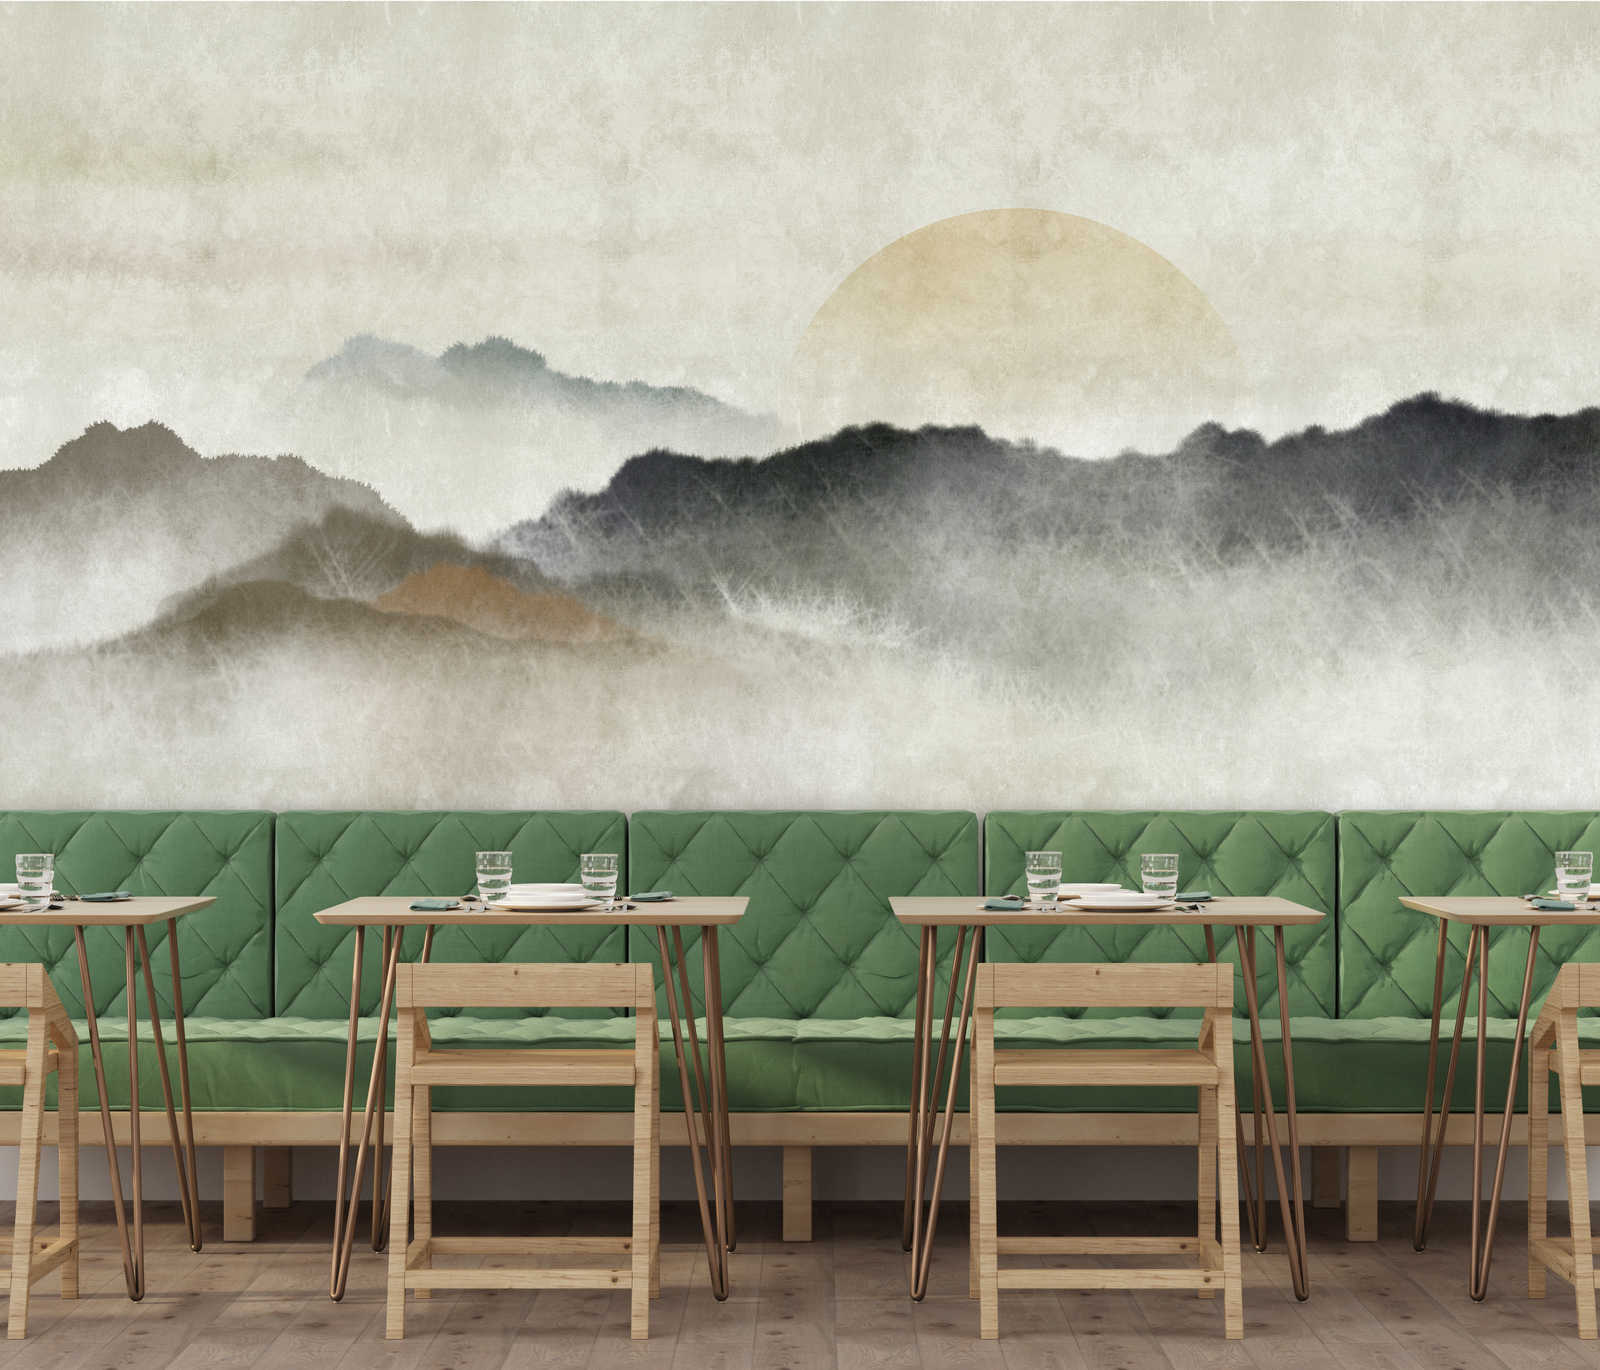             Akaishi 1 - Muurschildering Aziatische print Bergketen bij dageraad
        